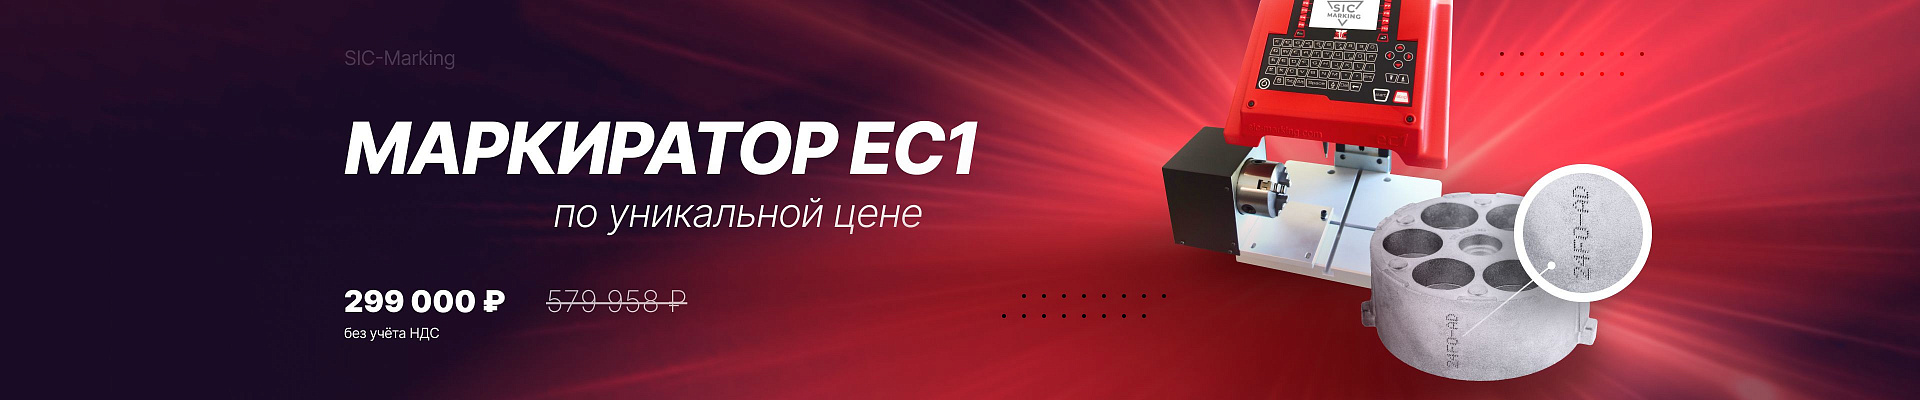 SIC 20 лет - Маркиратор ec1 за 299 тысяч - версия Октябрь 2023